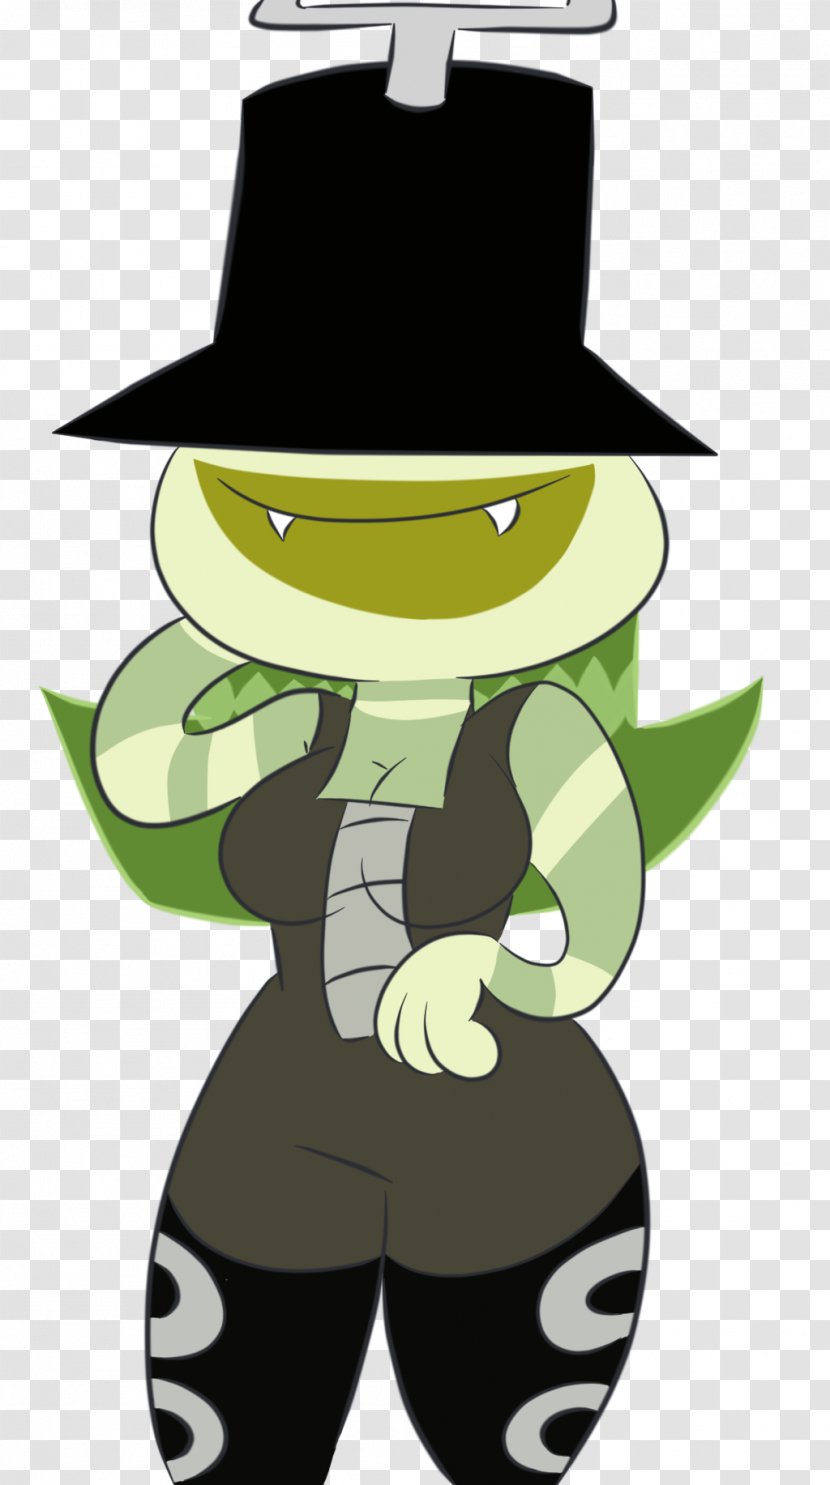 Green Hat Character Clip Art - Cartoon Transparent PNG